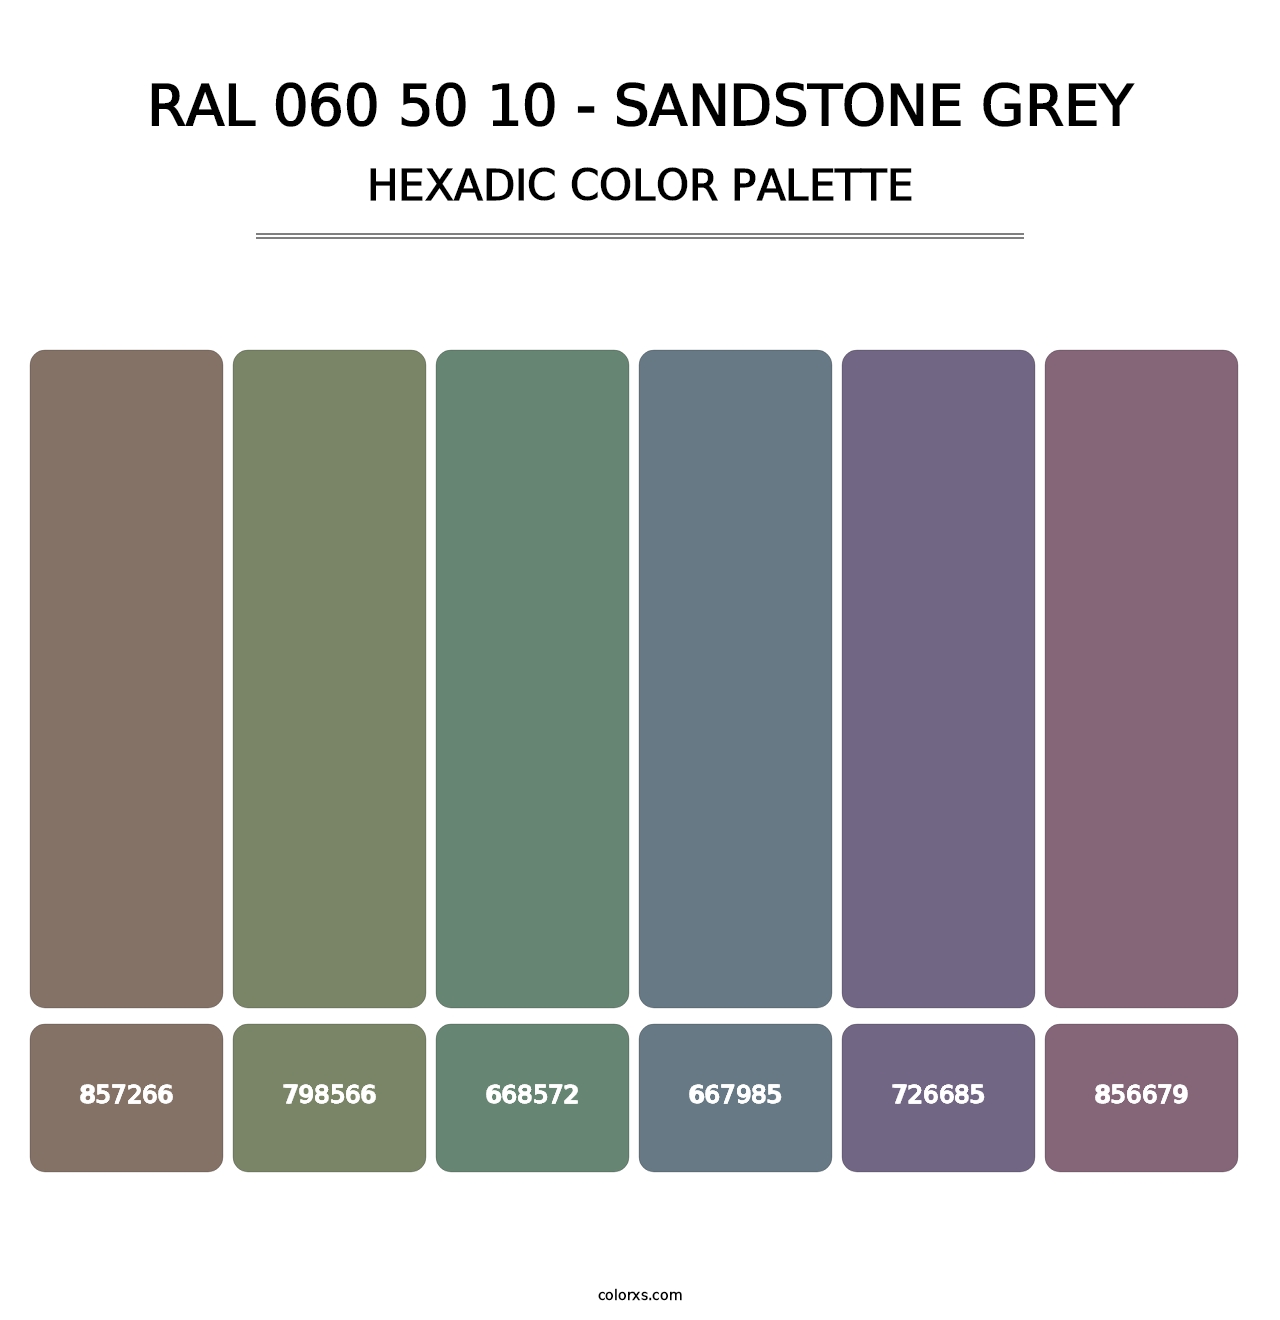 RAL 060 50 10 - Sandstone Grey - Hexadic Color Palette